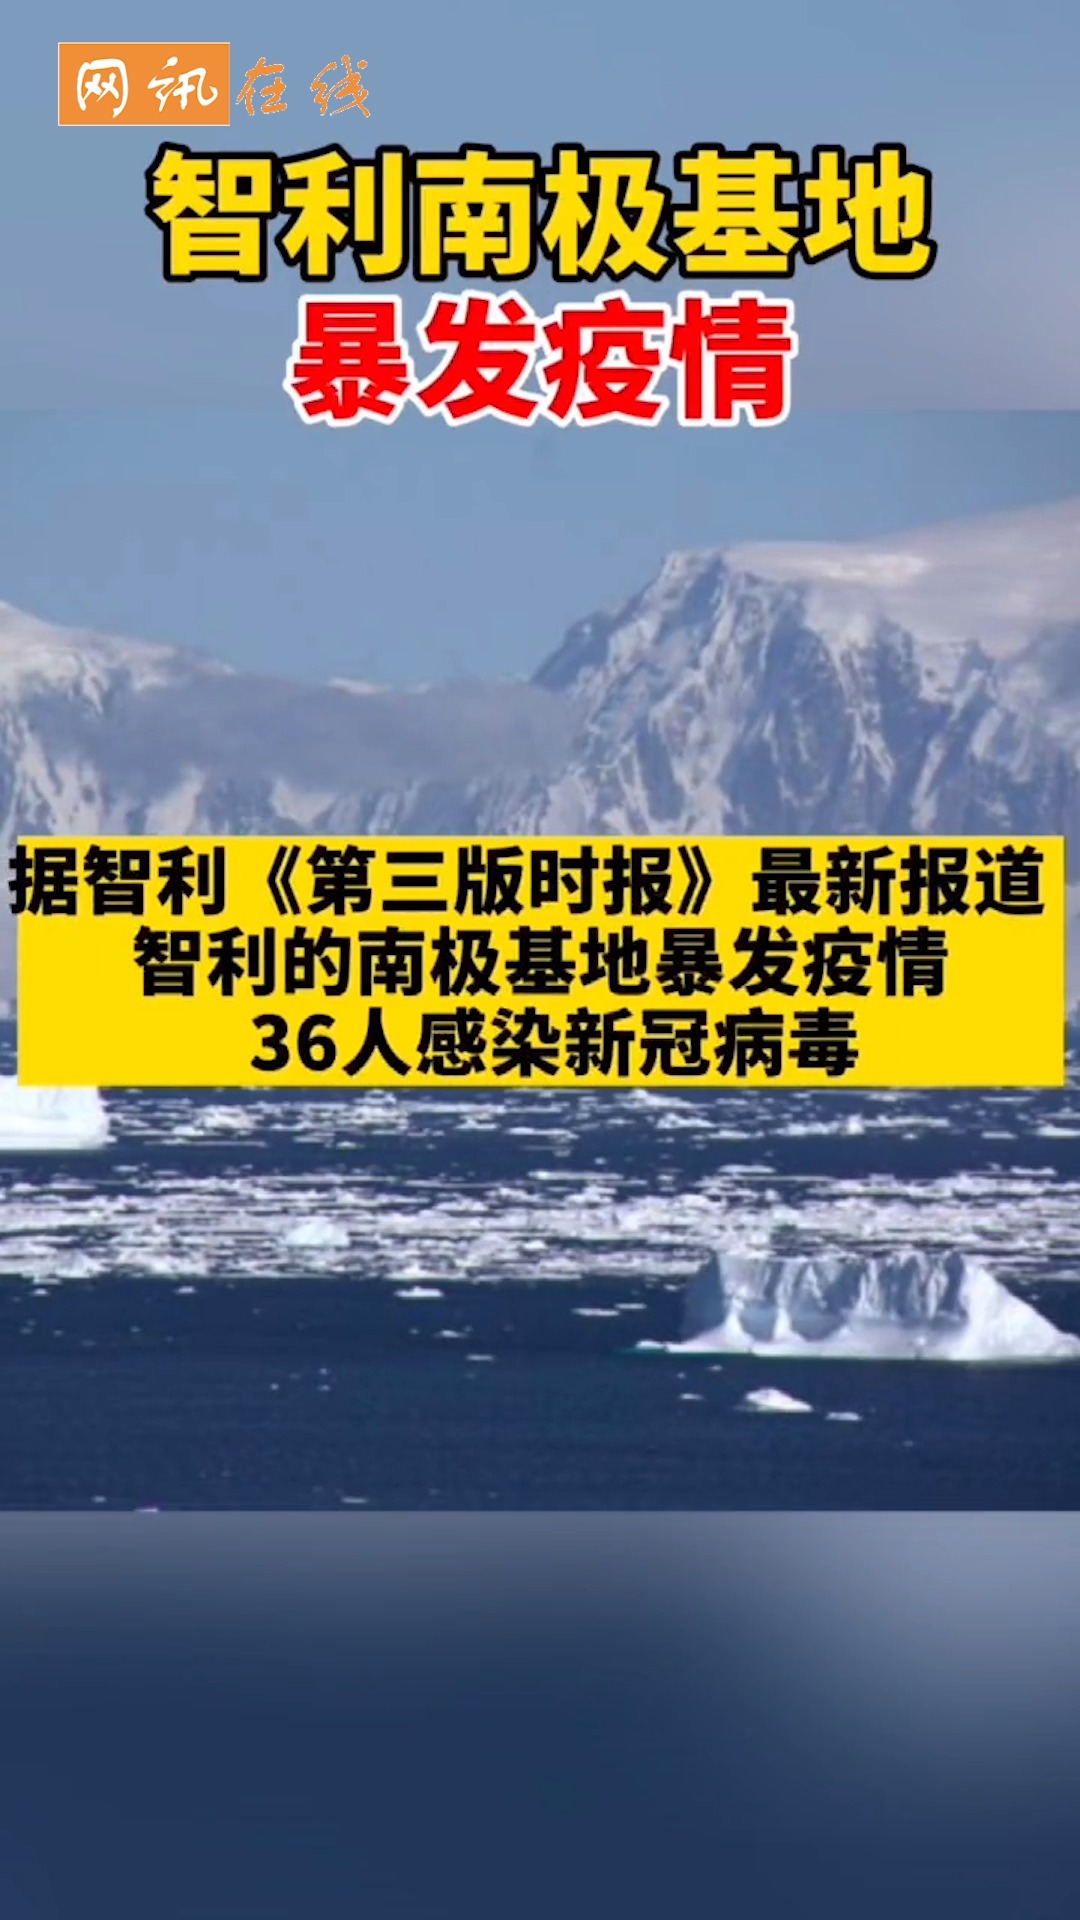 包含因疫情原因美国暂停南极旅游申请的词条